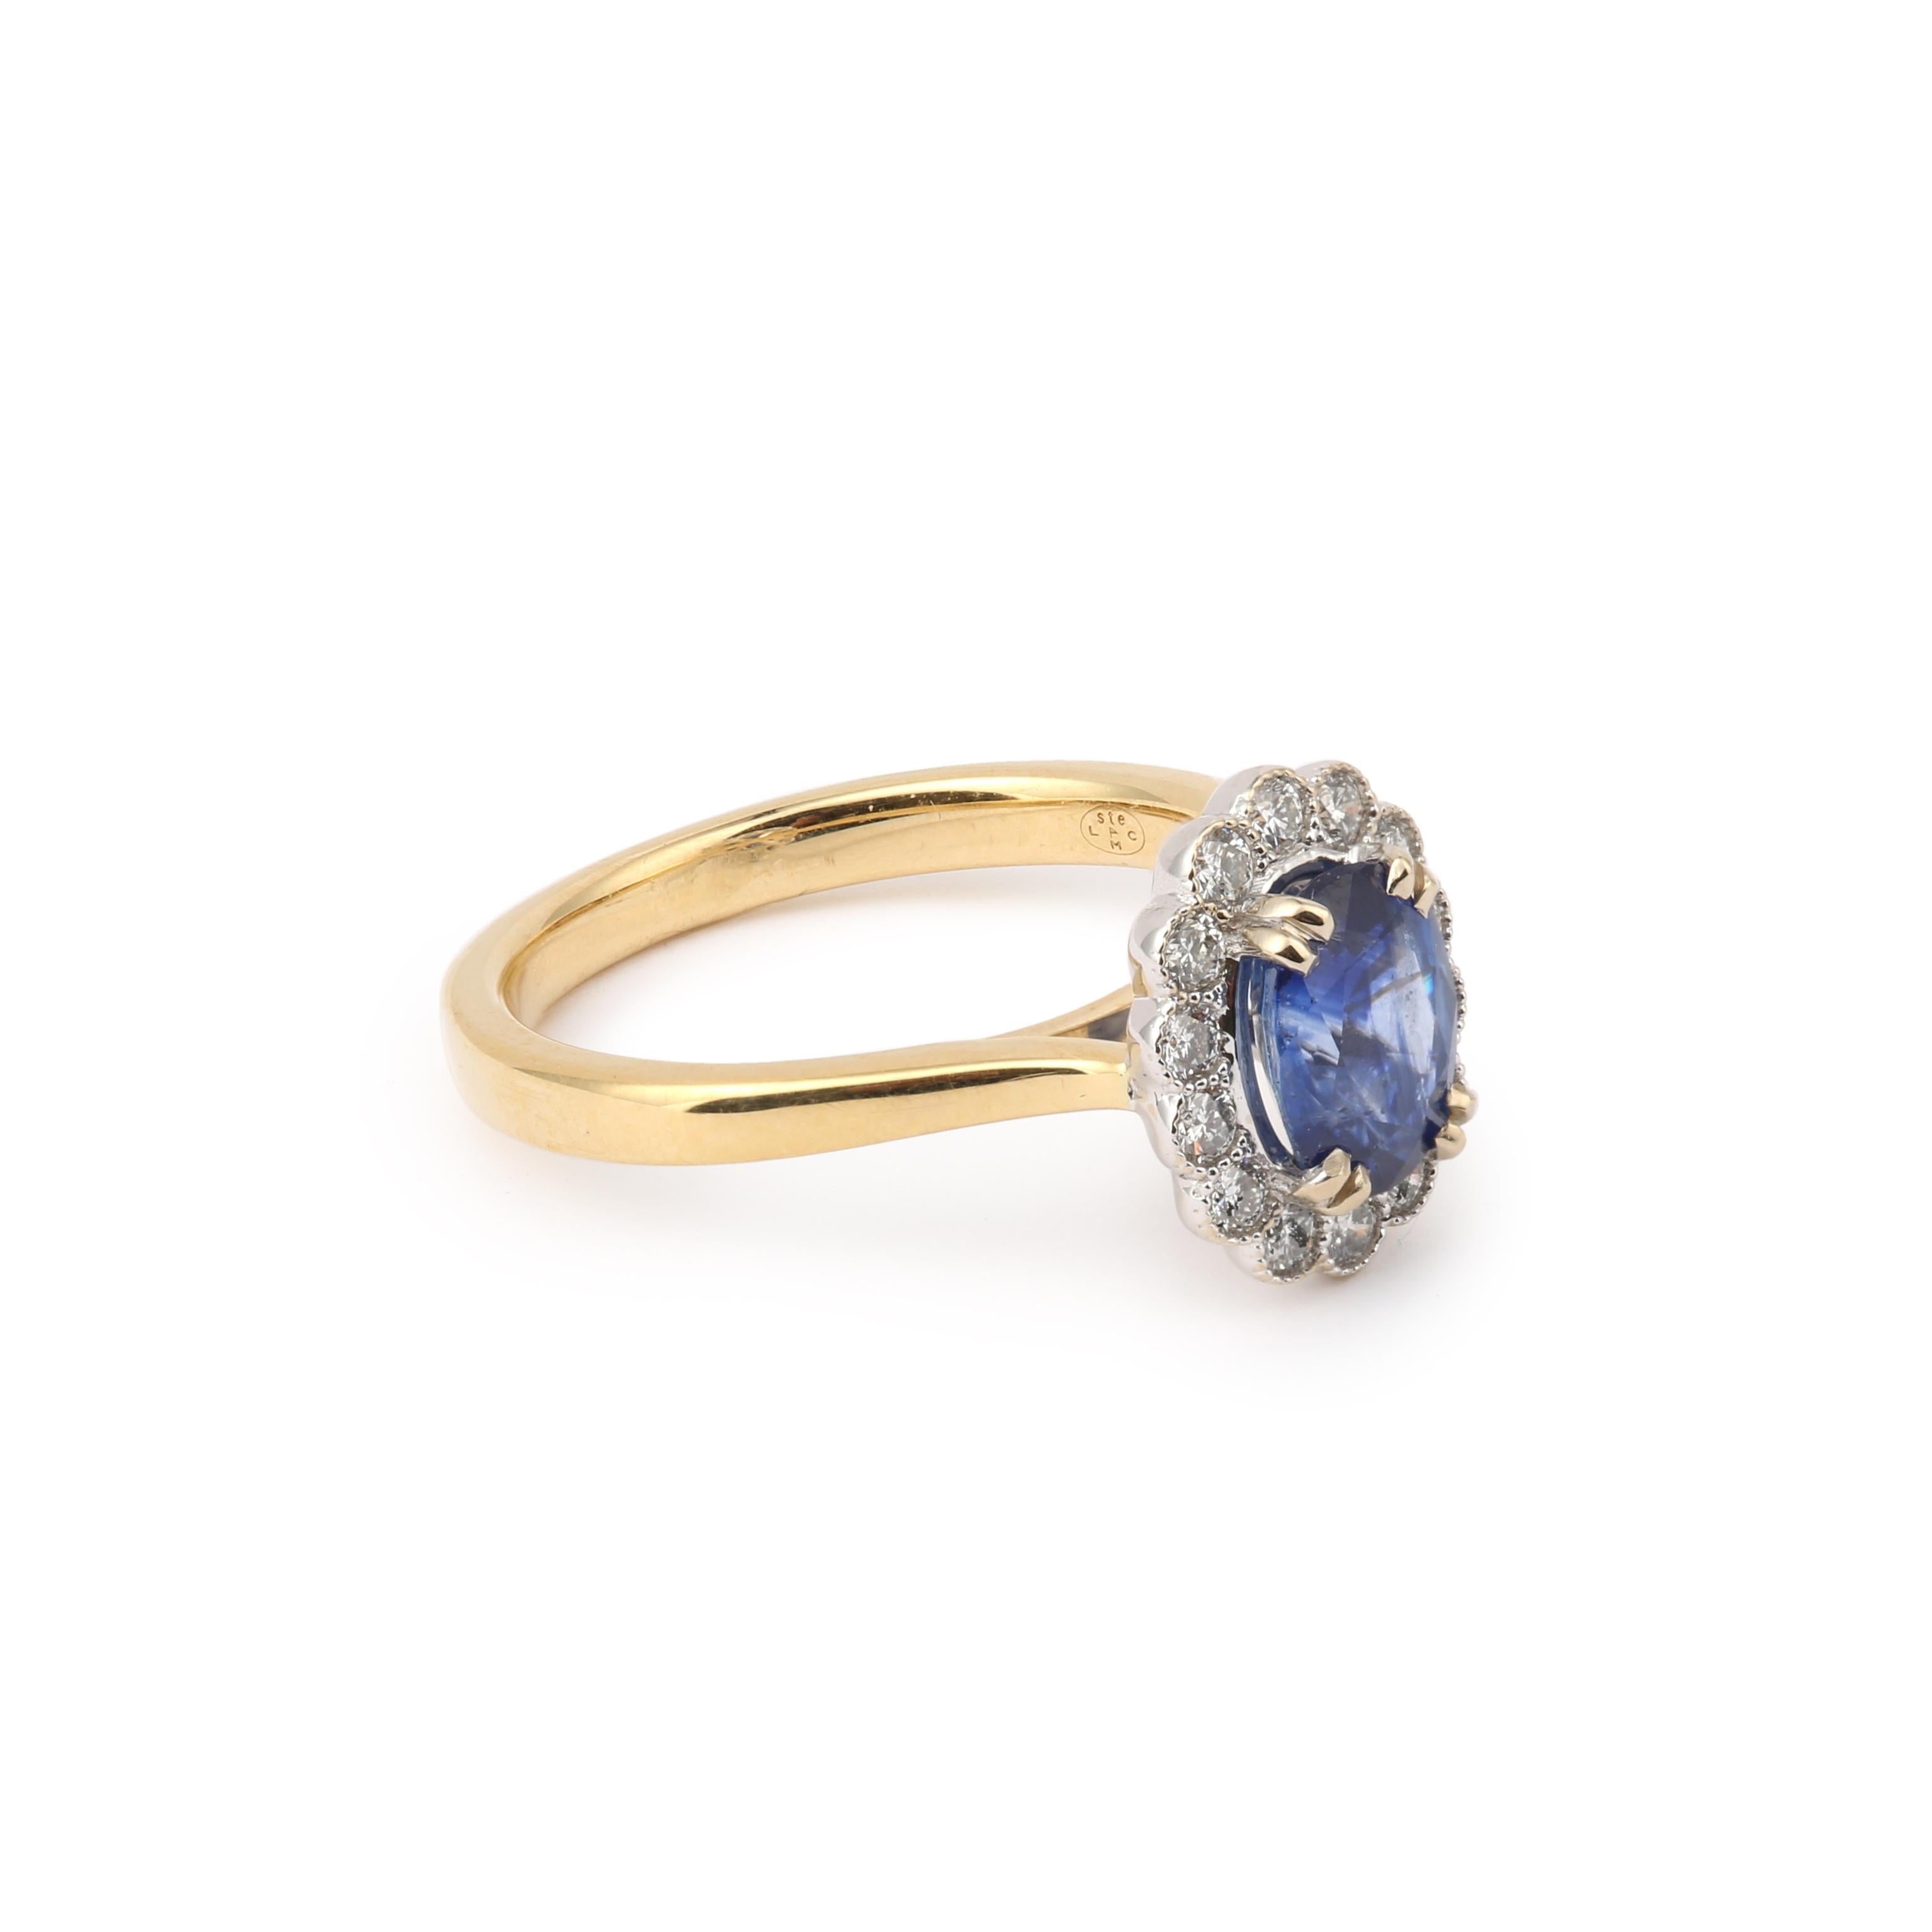 Pompadour-Ring aus Gelbgold, besetzt mit einem Saphir im Ovalschliff in einer Diamantfassung.

Gewicht des Saphirs : 1,44 Karat

Gesamtgewicht der Diamanten: 0,30 Karat

Abmessungen: 11,95 x 10 x 7,38 mm (0,470 x 0,393 x 0,290 Zoll)

Fingergröße :